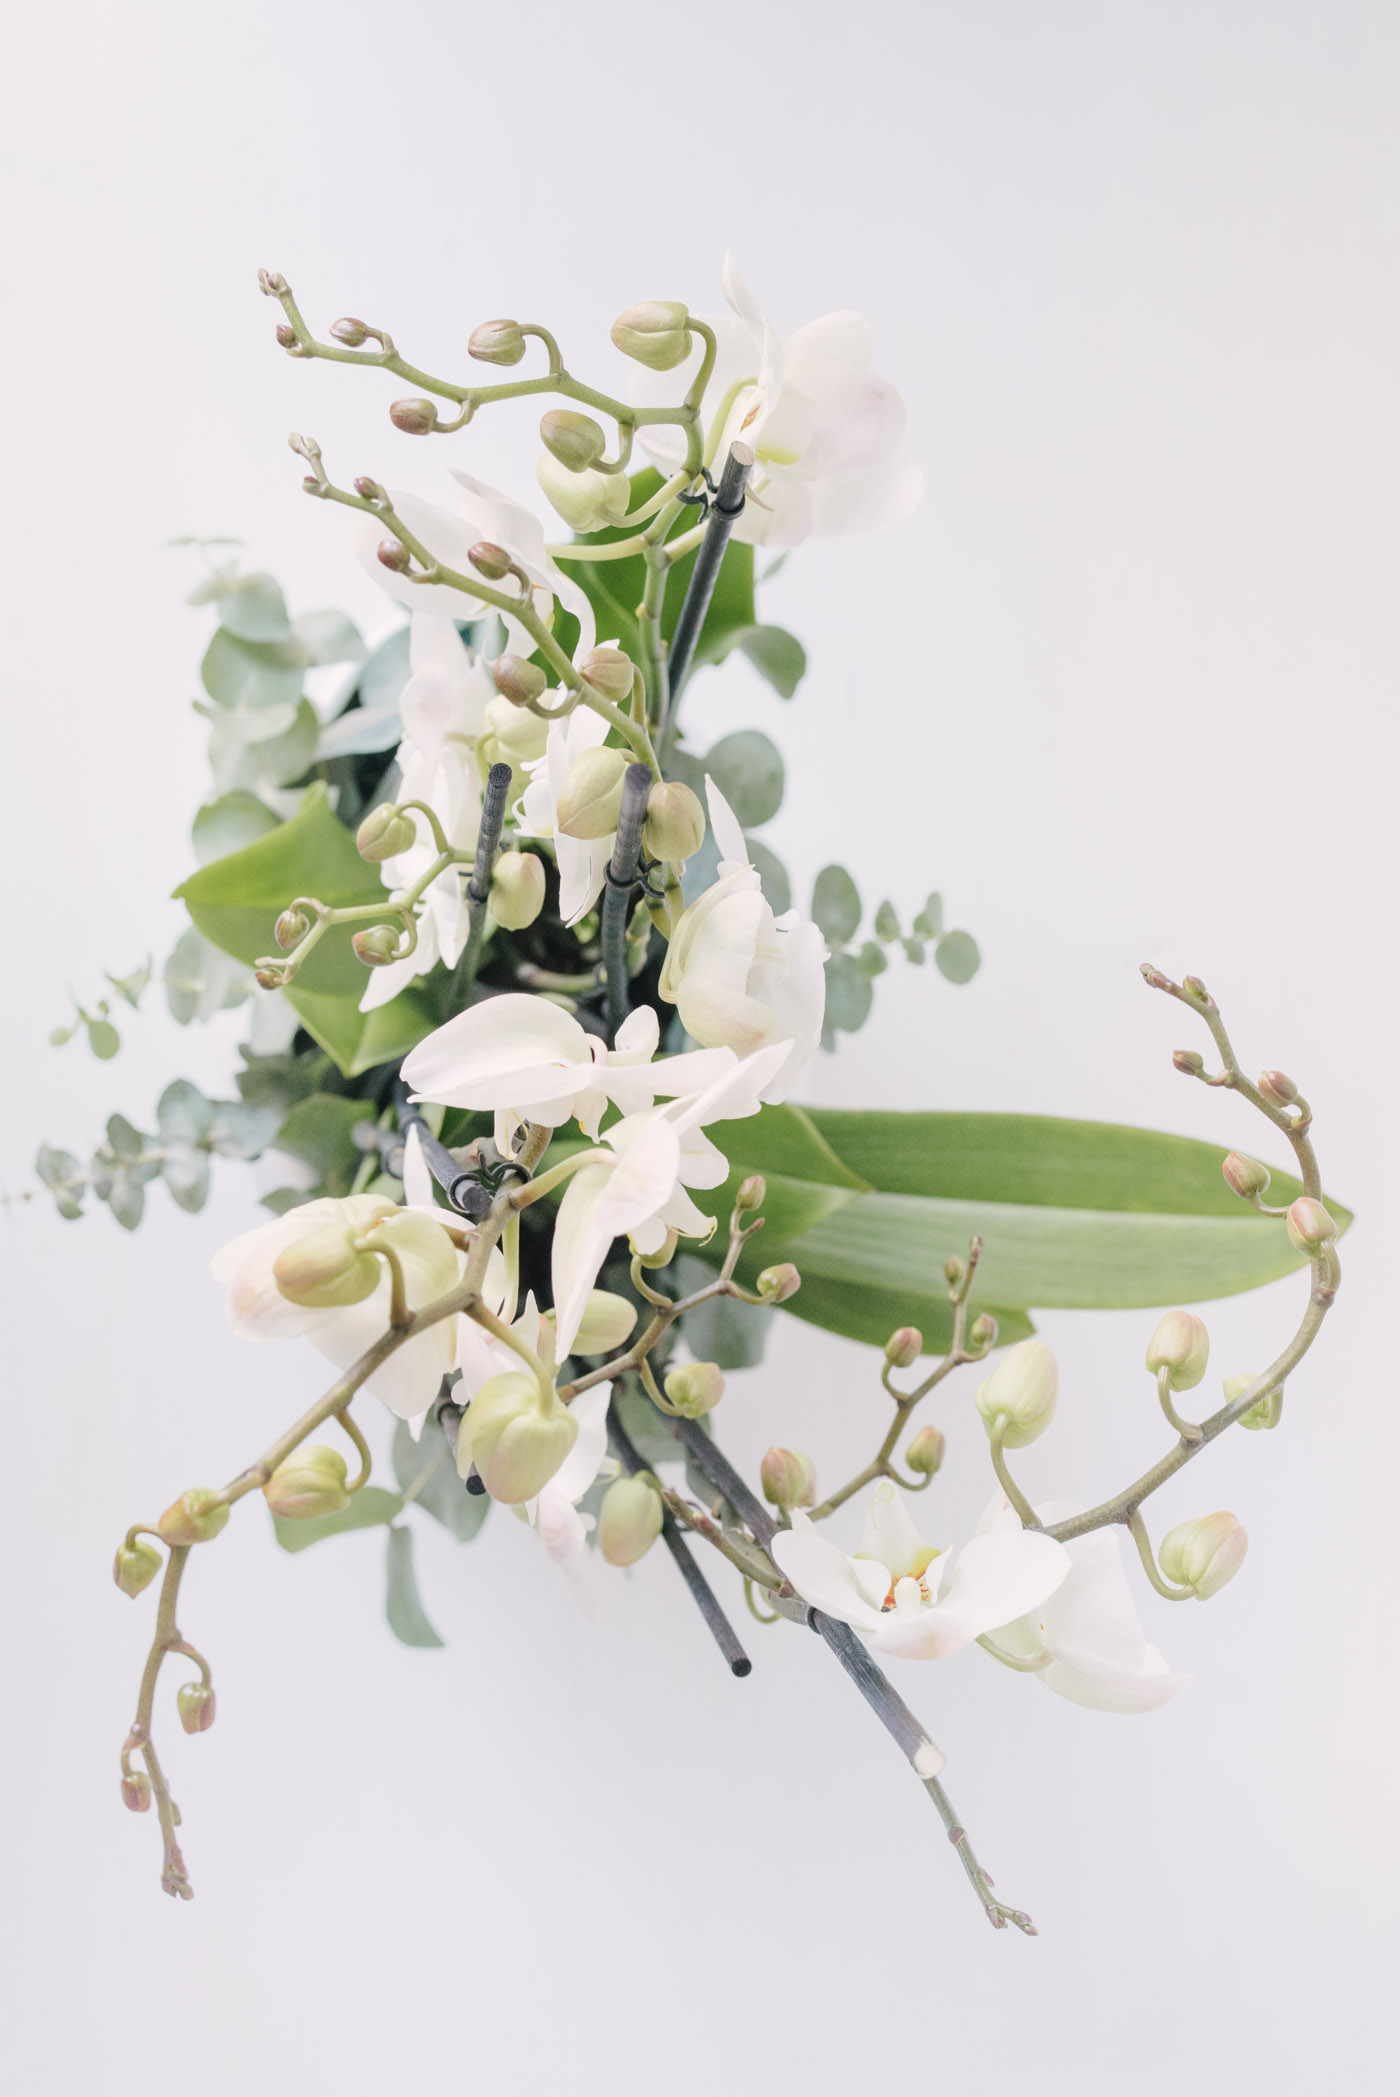 Aranjament Cu Orhidee Albe In Vas Ceramic